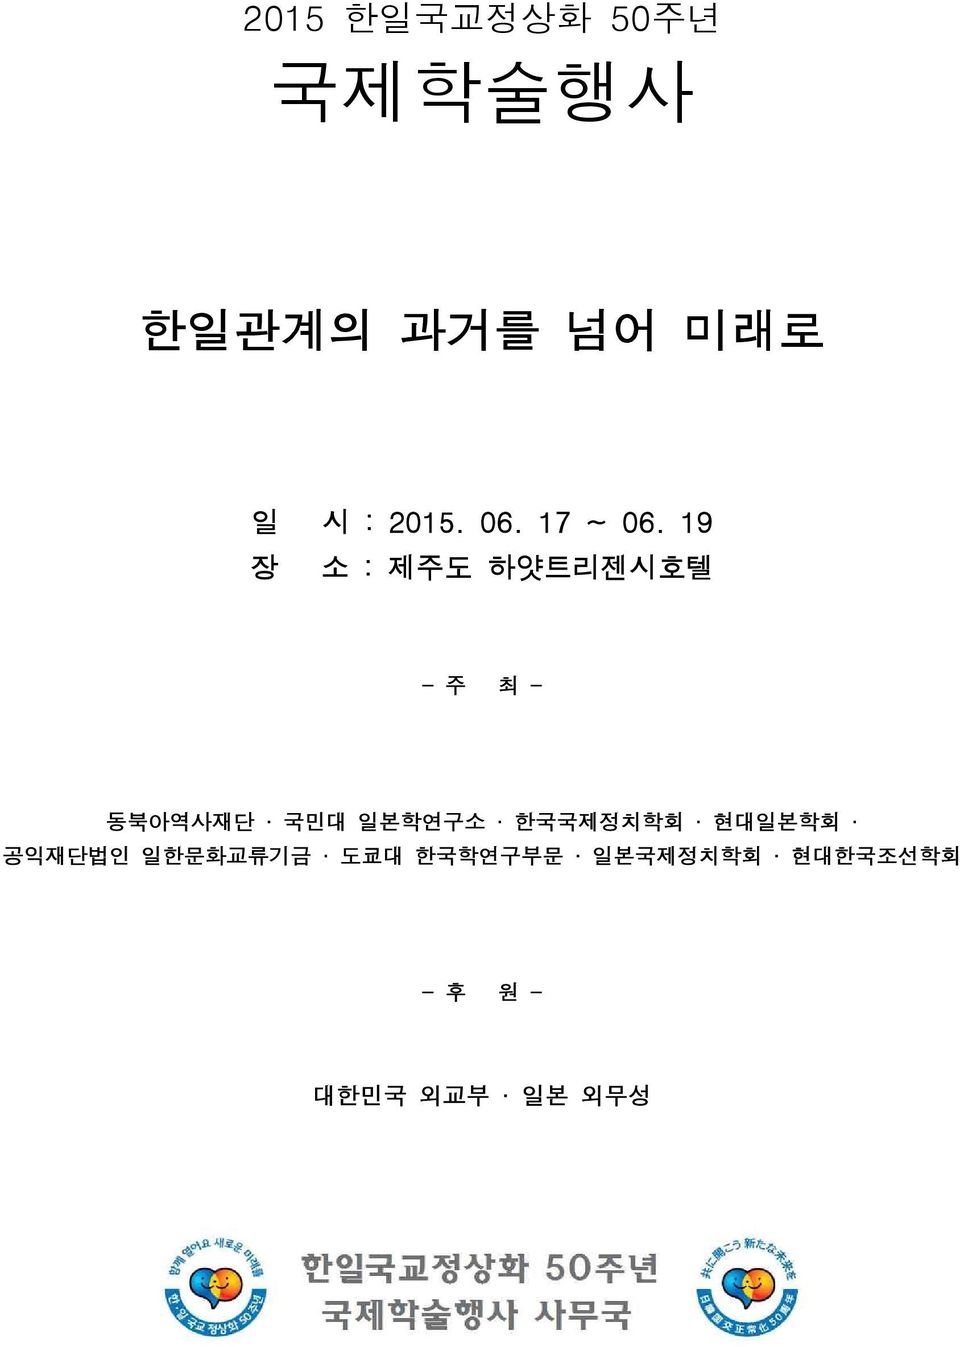 19 장 소 : 제주도 하얏트리젠시호텔 - 주 최 - 동북아역사재단 국민대 일본학연구소